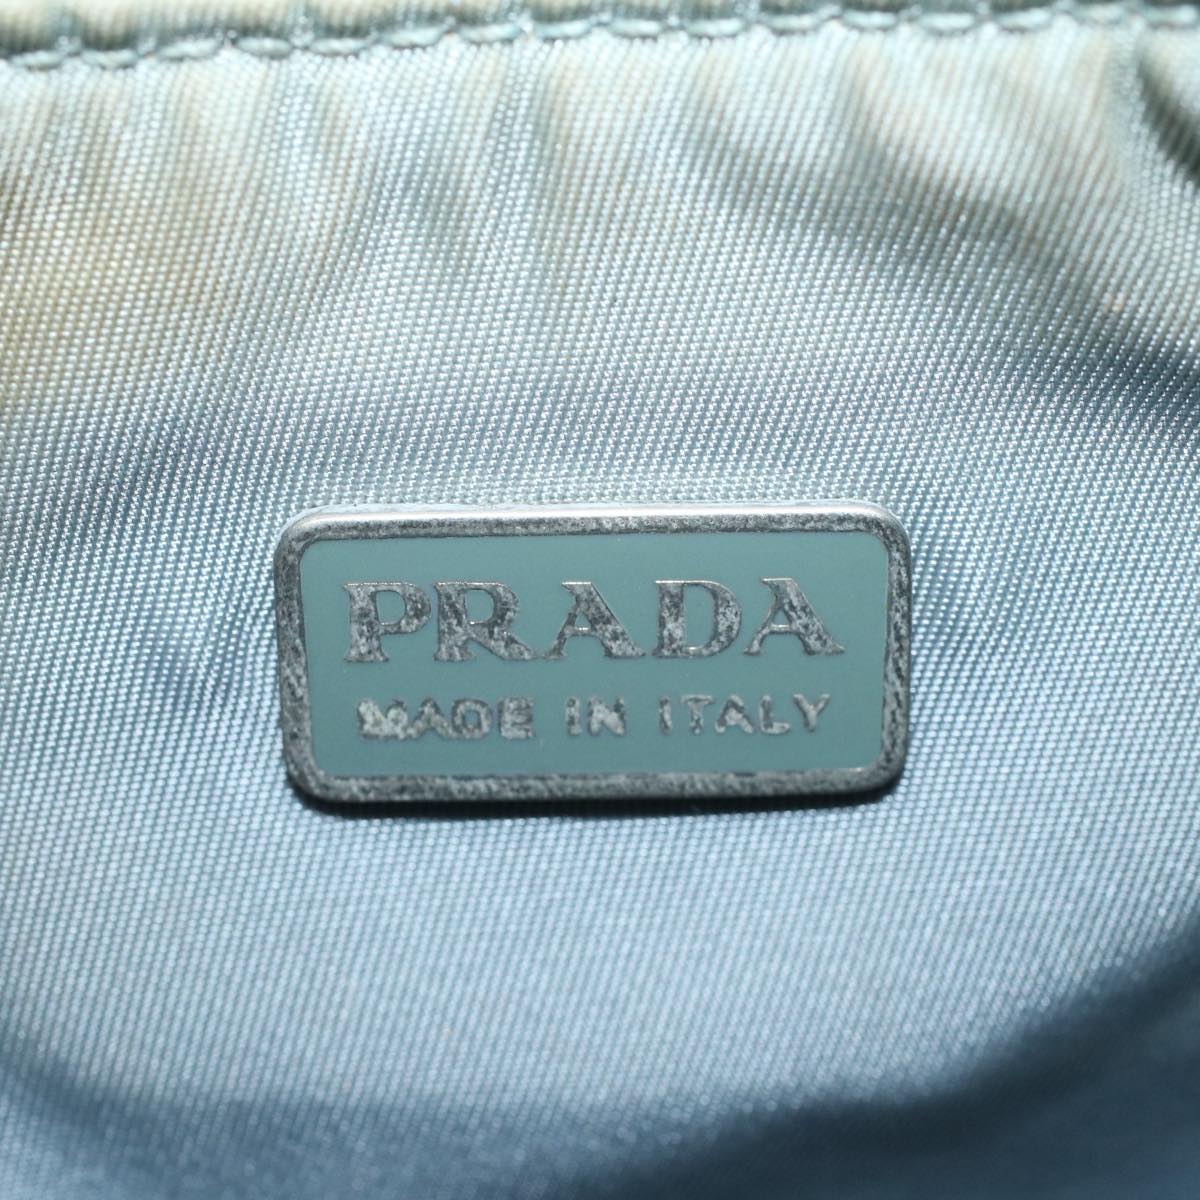 PRADA Hand Bag Canvas White Light Blue Auth 59618